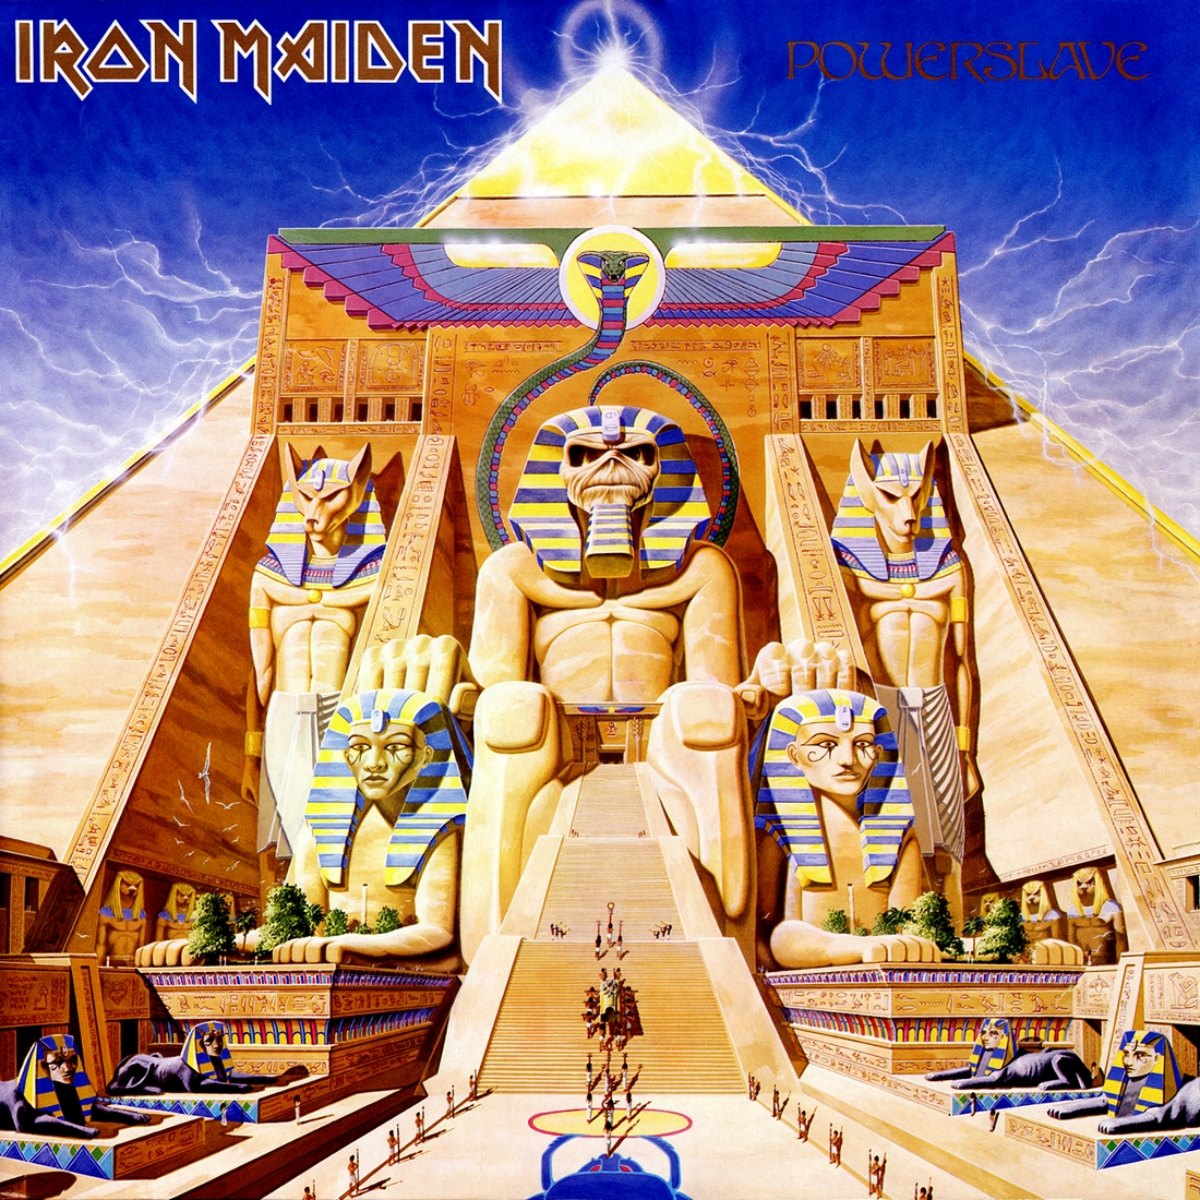 Couverture de l'album " Powerslave " d'Iron Maiden